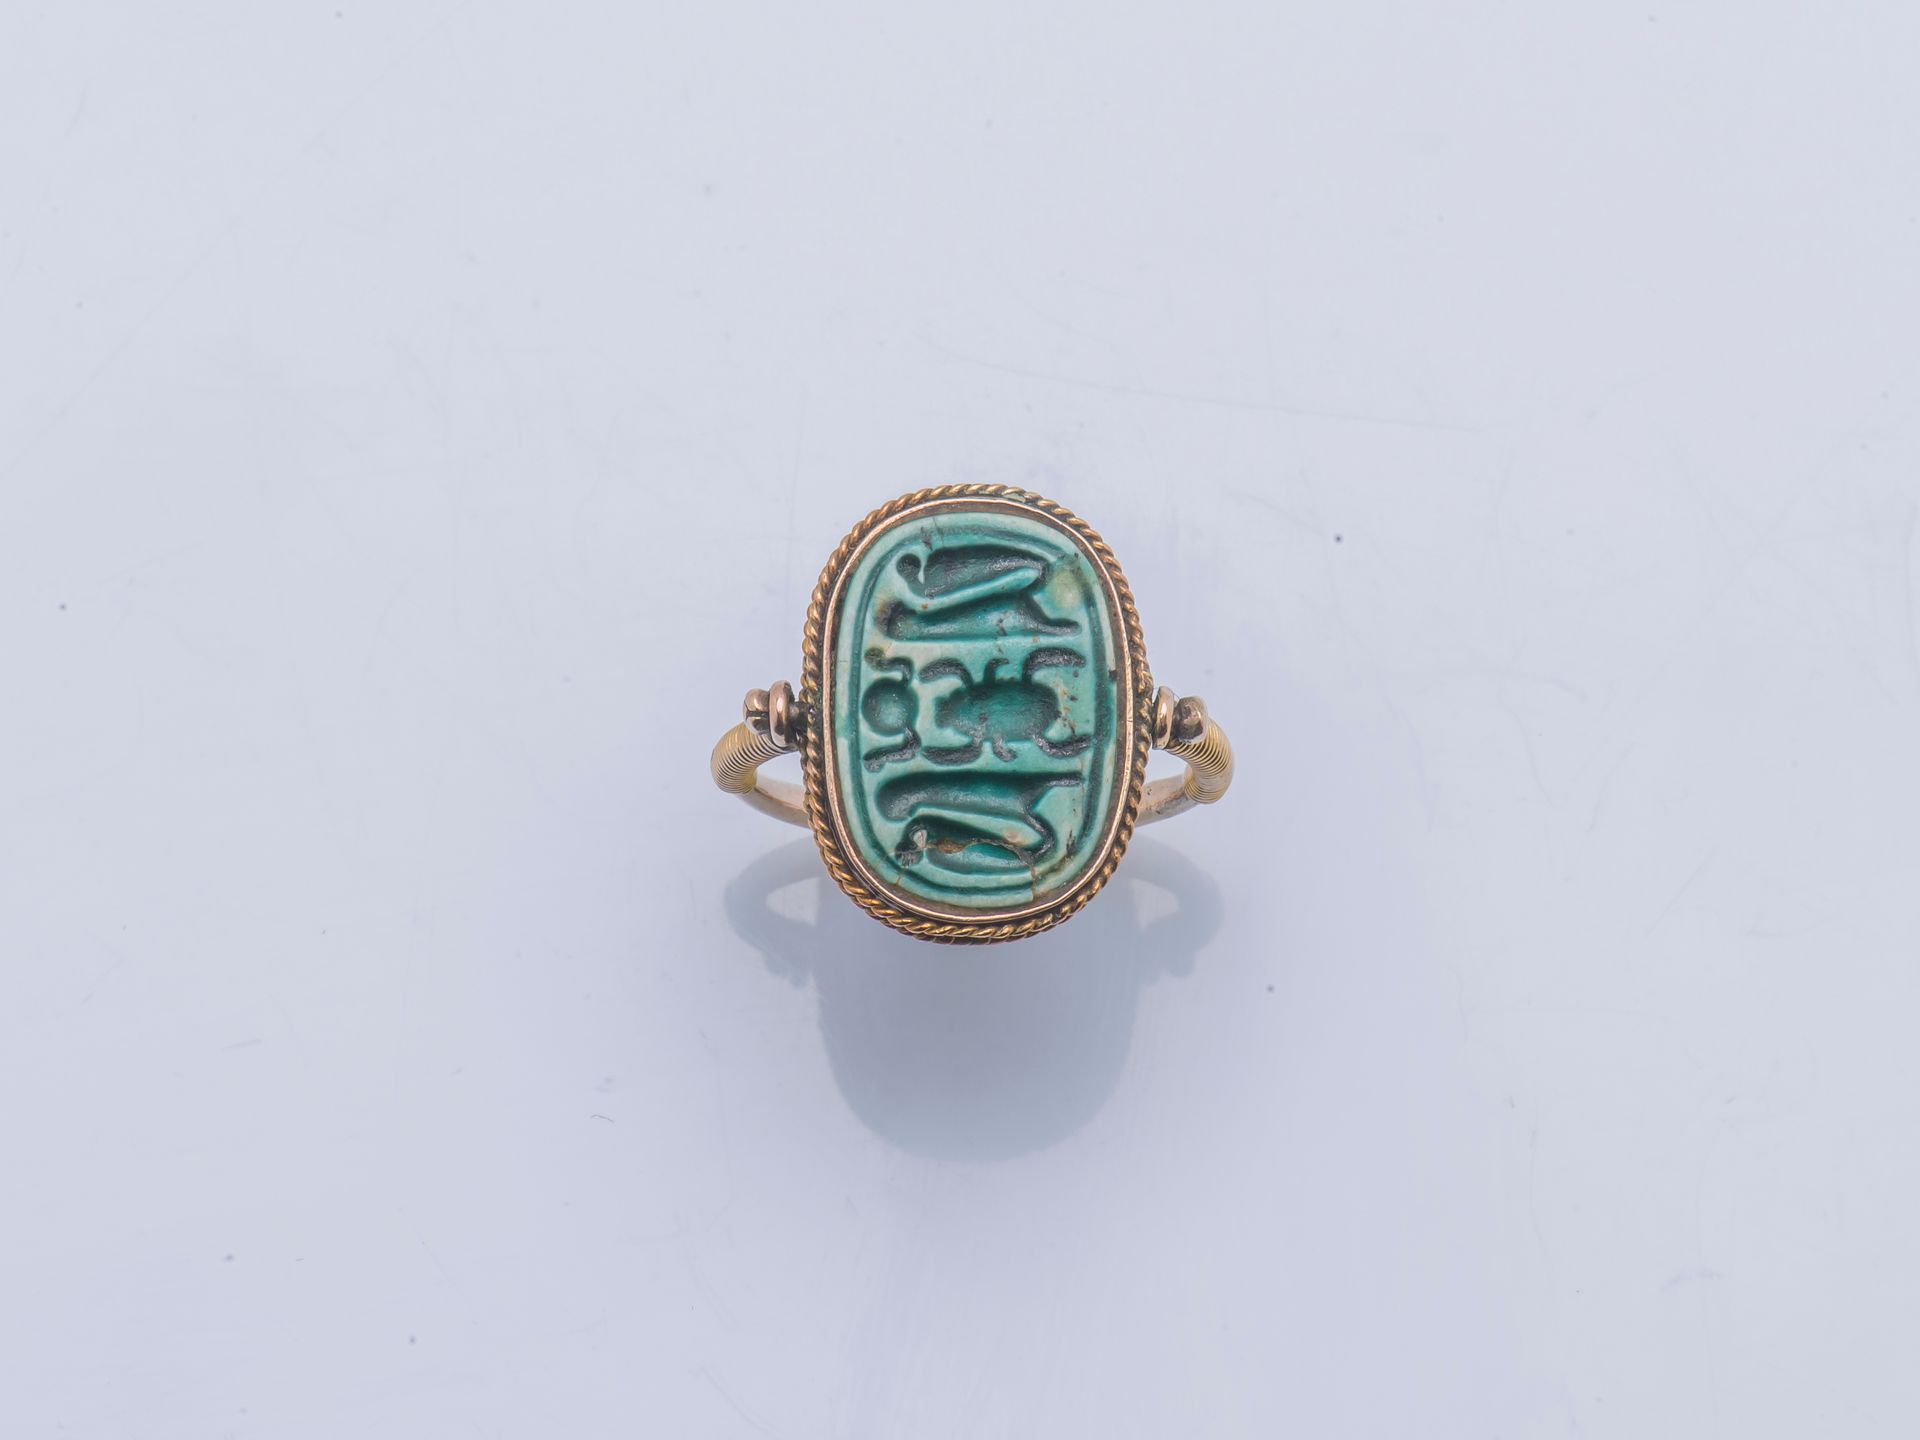 Null 14克拉（585千分之一）黄金的仿古风格戒指，在转轴上镶嵌有象形文字装饰的蓝色陶器，肩部线圈。

手指尺寸 : 47 / 48 毛重 : 3,8 g